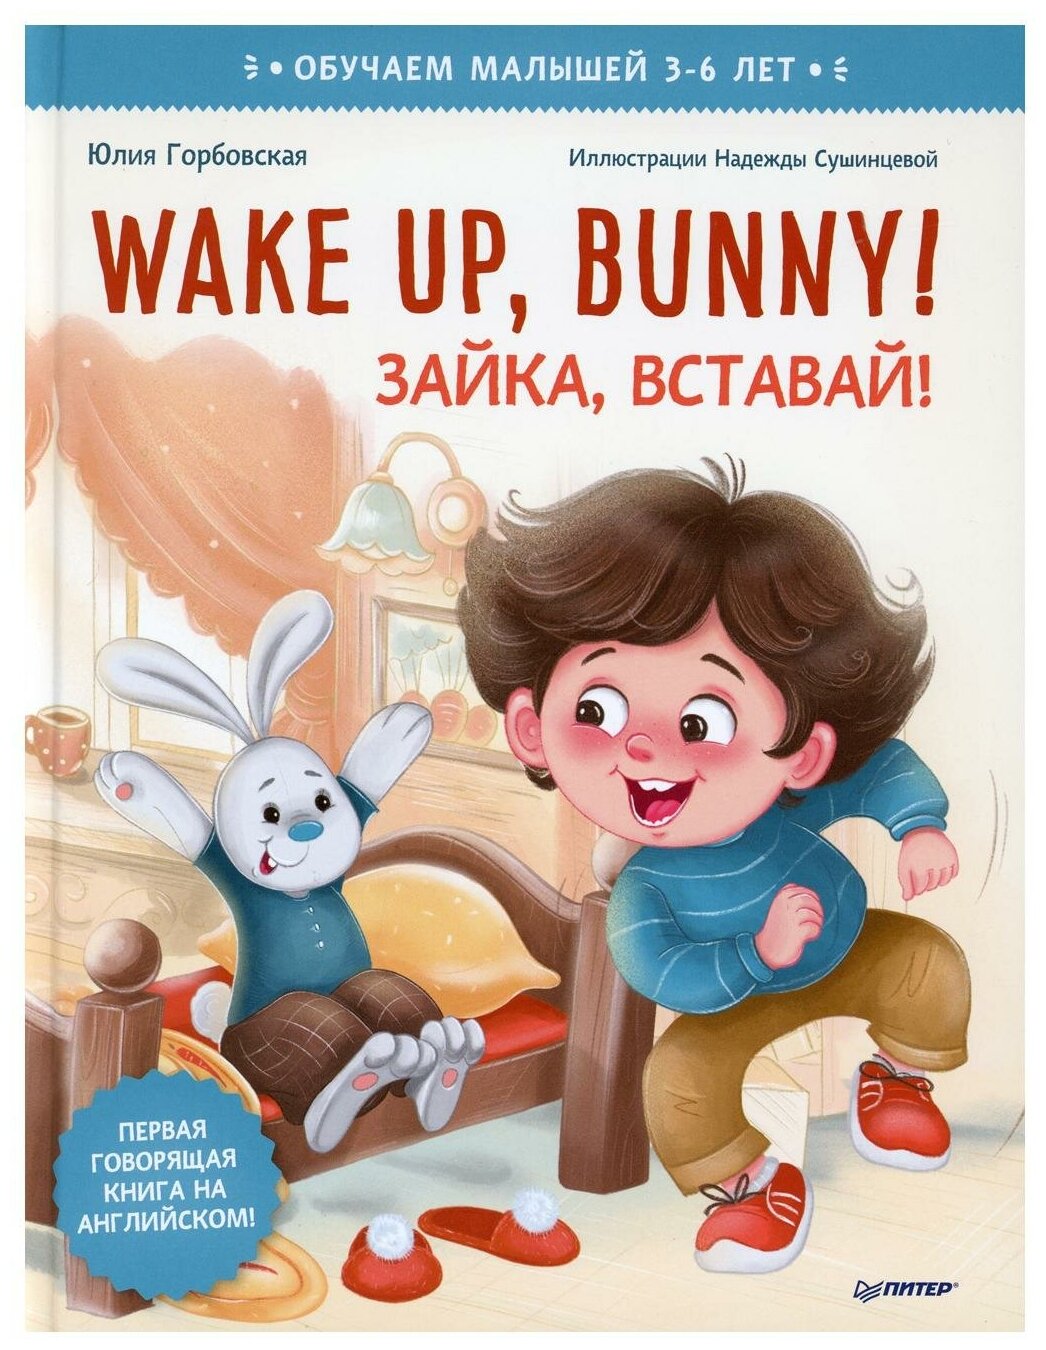 Wake up Bunny! Зайка вставай! Аудиосказка - внутри под QR-кодом! Полезные сказки на английском. 3-6 лет